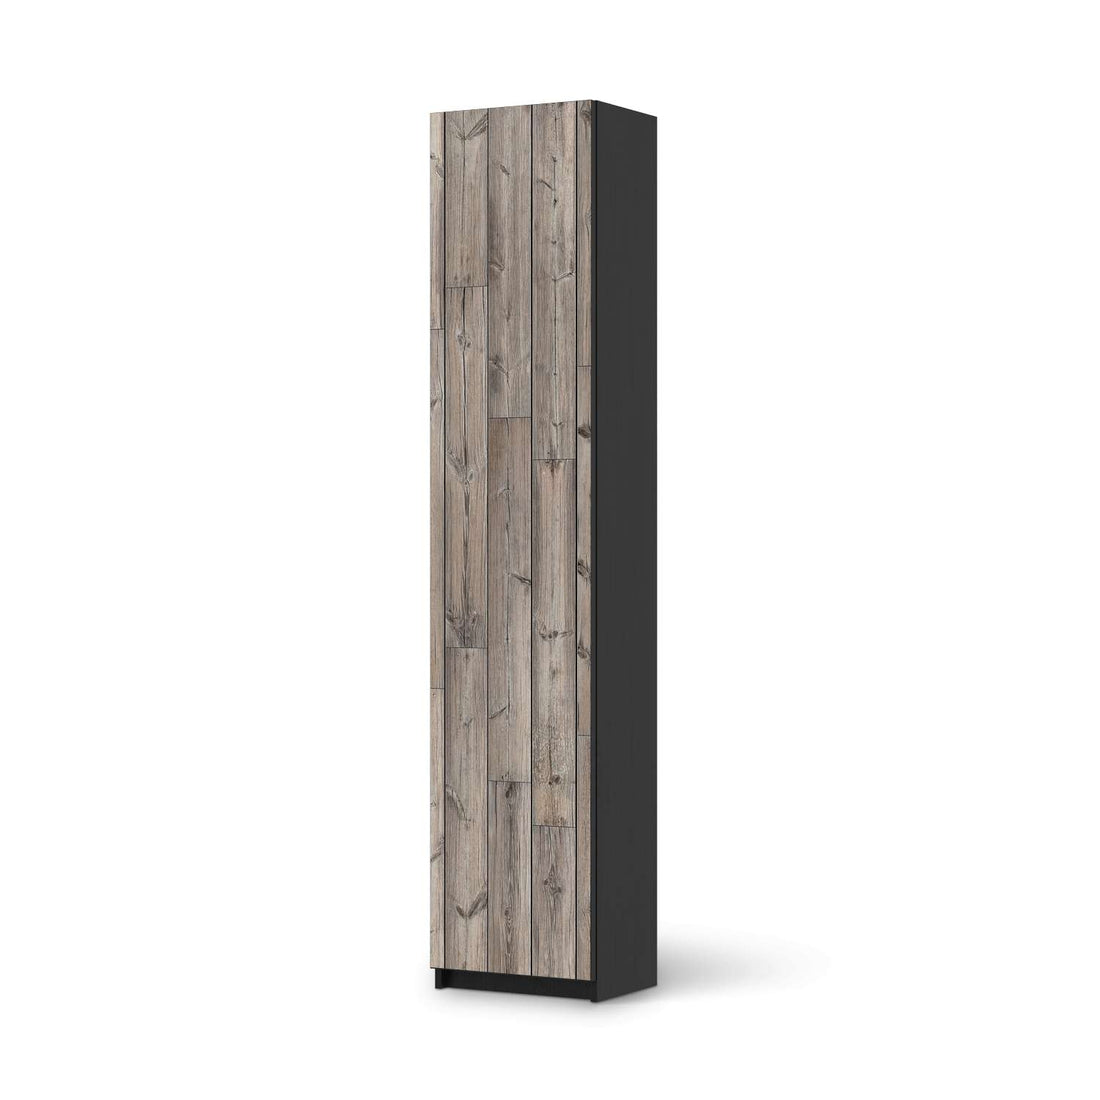 Klebefolie Dark washed - IKEA Pax Schrank 236 cm Höhe - 1 Tür - schwarz